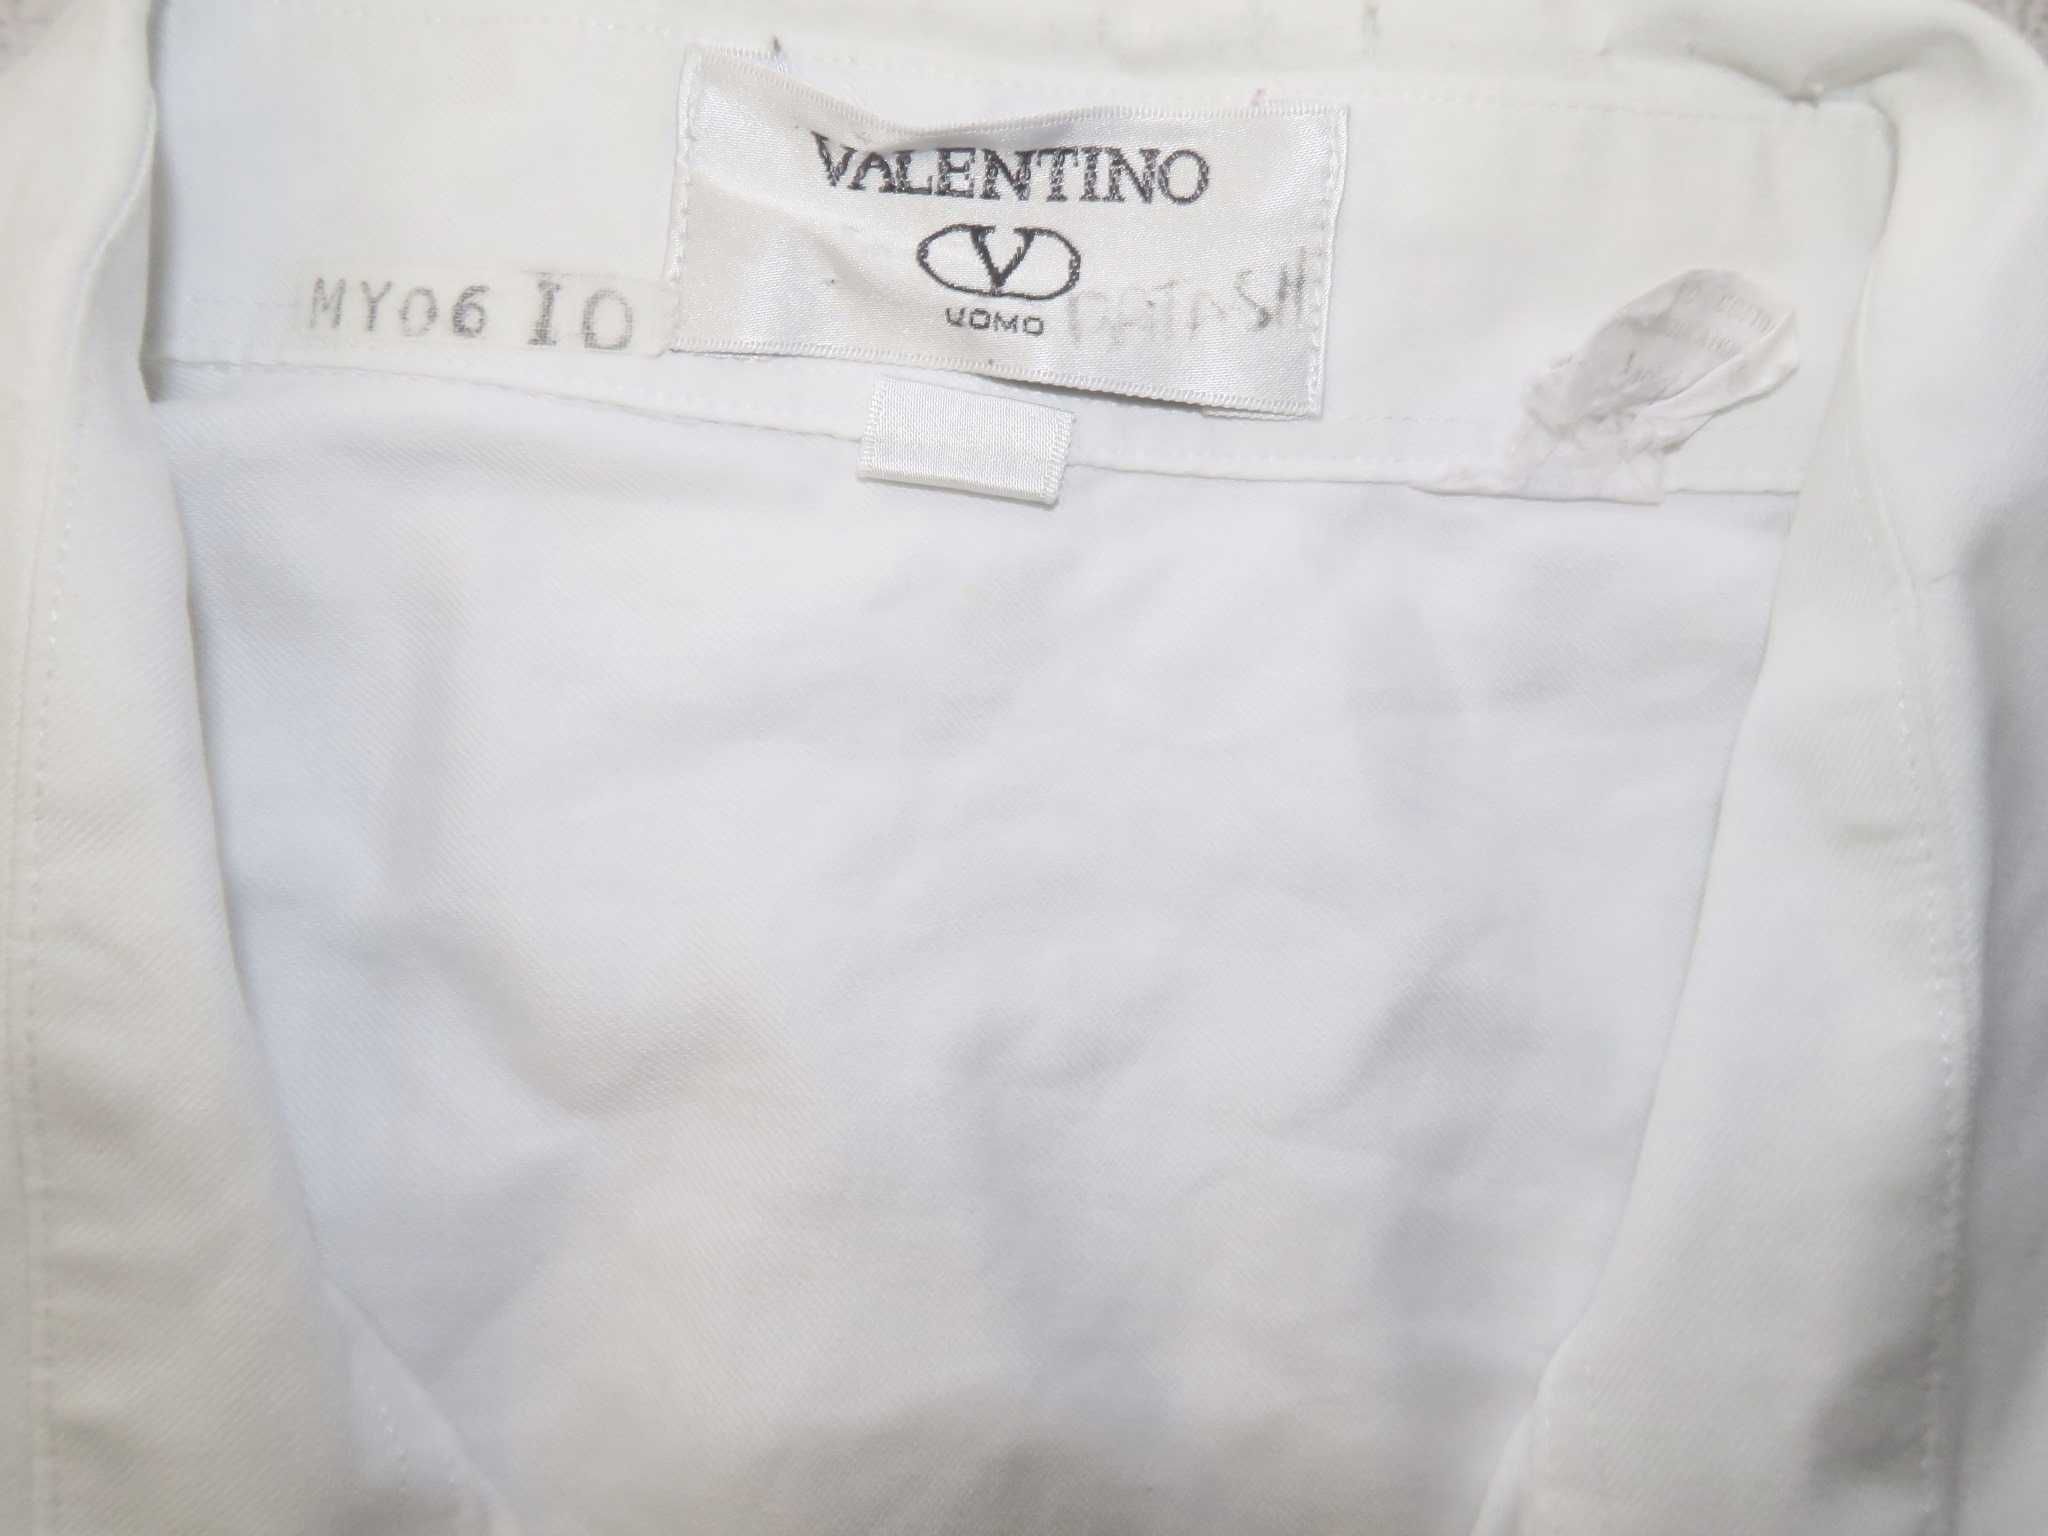 Valentino koszula klasyczna vintage 16 1/2 34-35